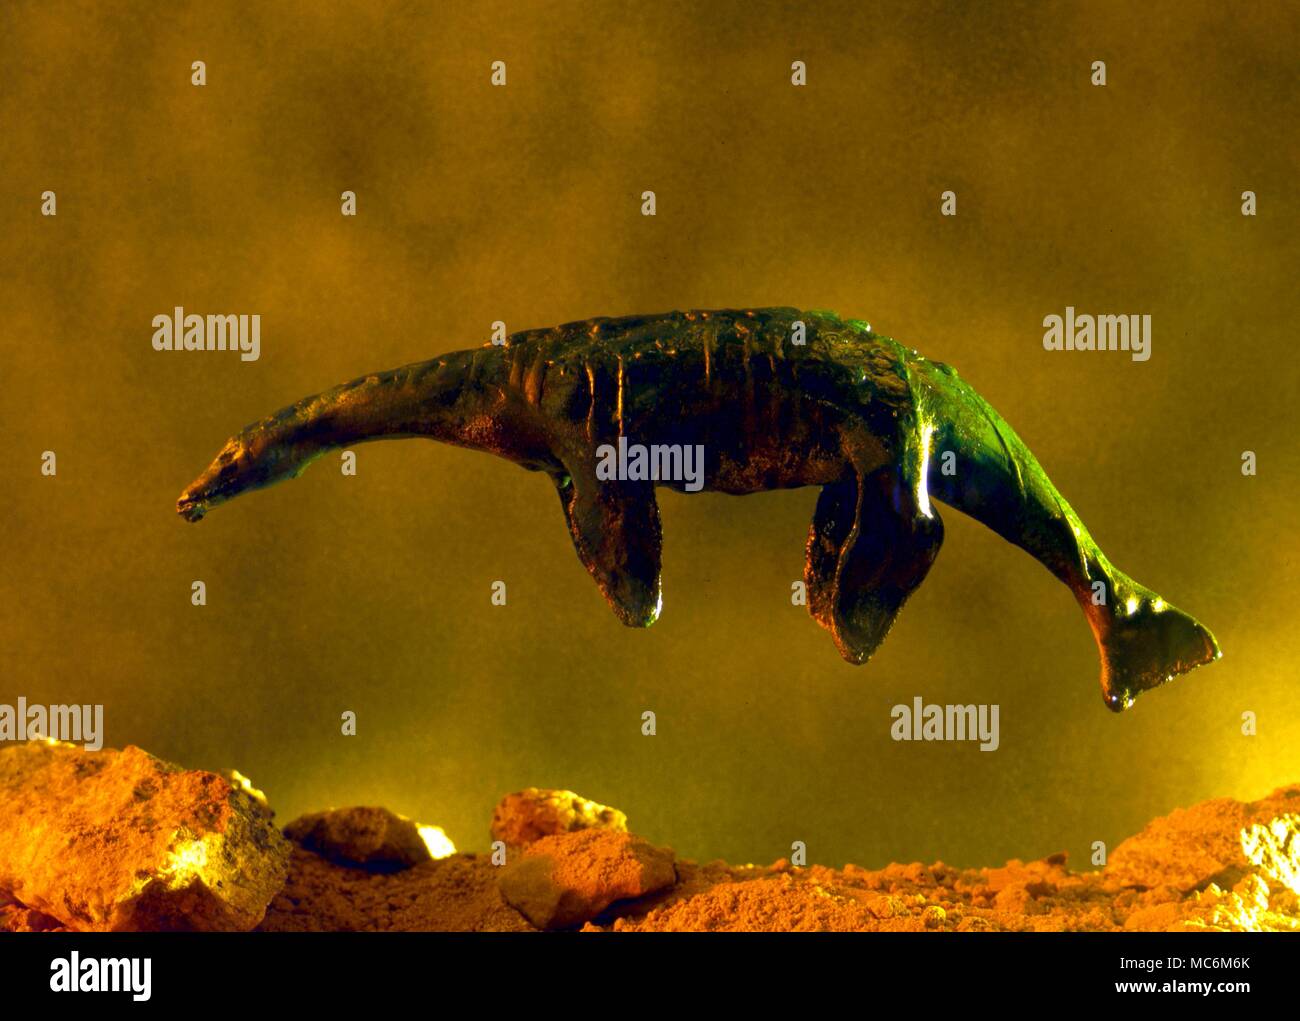 Mostri. Il mostro marino o mostro lacustre. Questo è un modello in scala di un preistorico mostro acquatico, il Plesiosaurus che ha beeen rivendicato come l'originale "Mostro di Loch Ness". Foto Stock